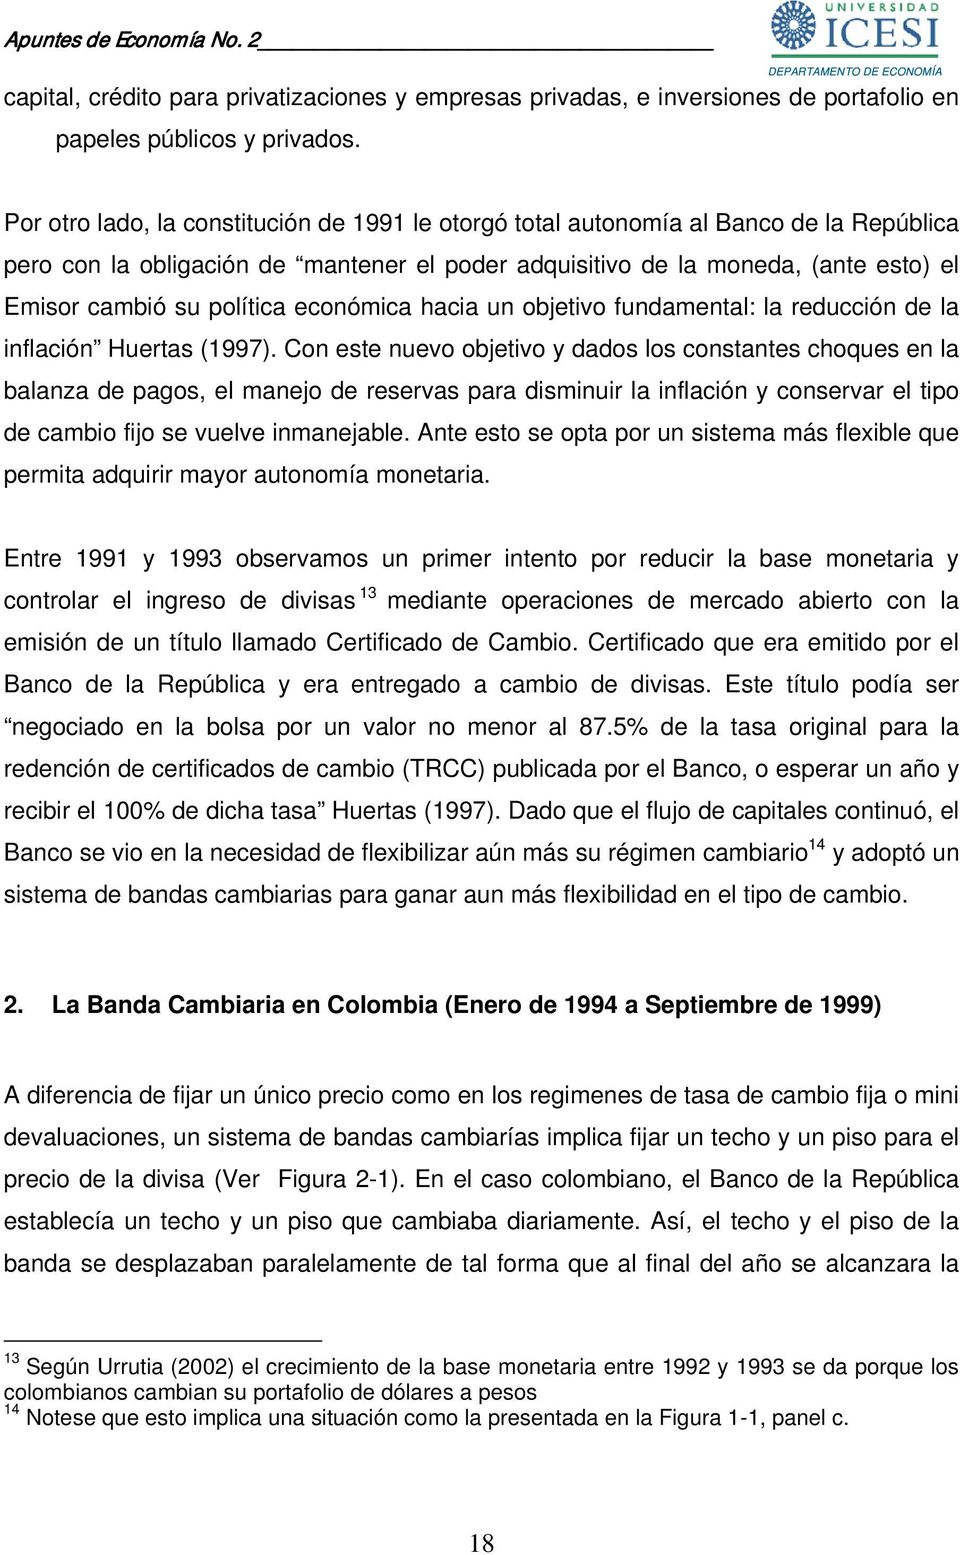 política económica hacia un objetivo fundamental: la reducción de la inflación Huertas (1997).